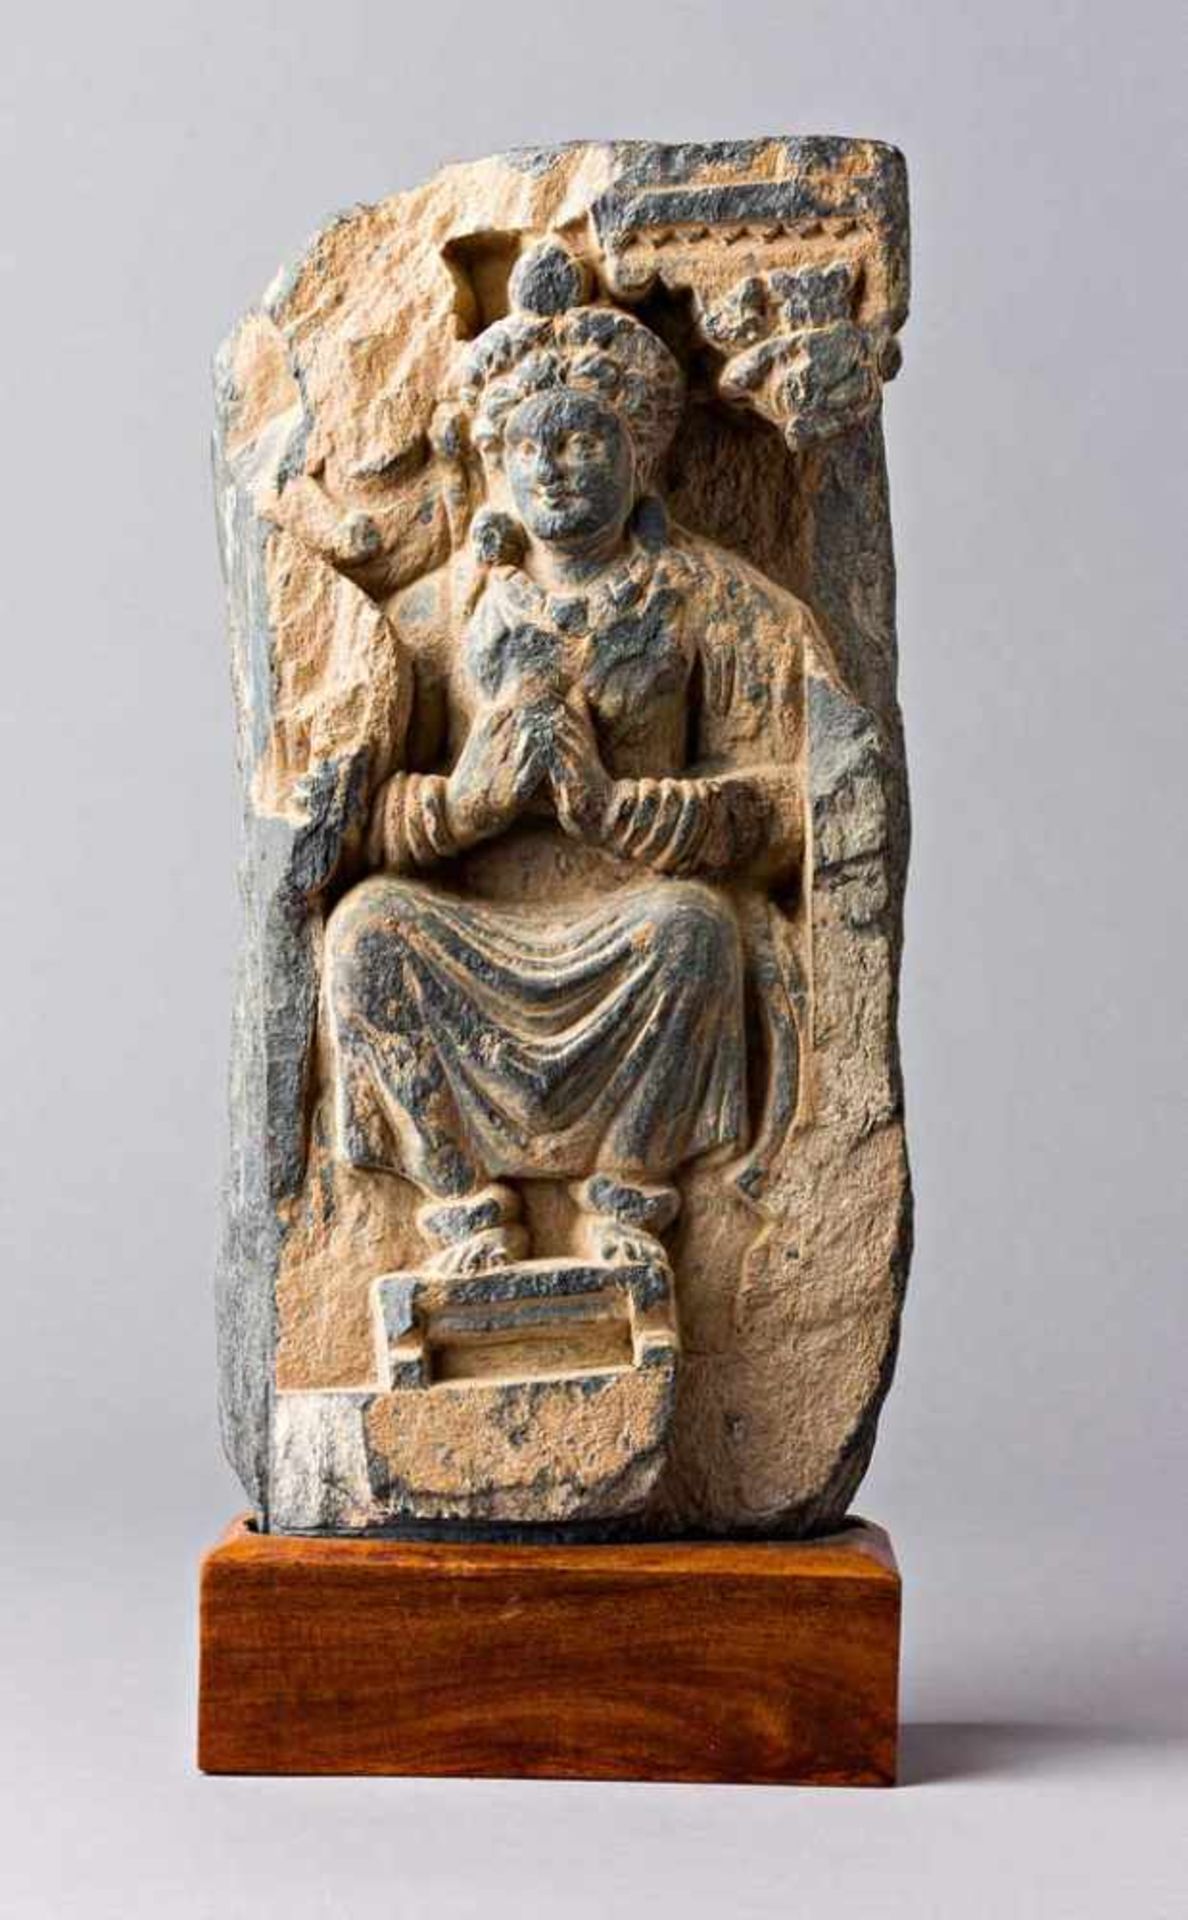 Sitzender Buddha auf Thronsessel. Grauer Schiefer. Gandhara-Region, Nordwest-Pakistan, 3. Jh. n.Chr.